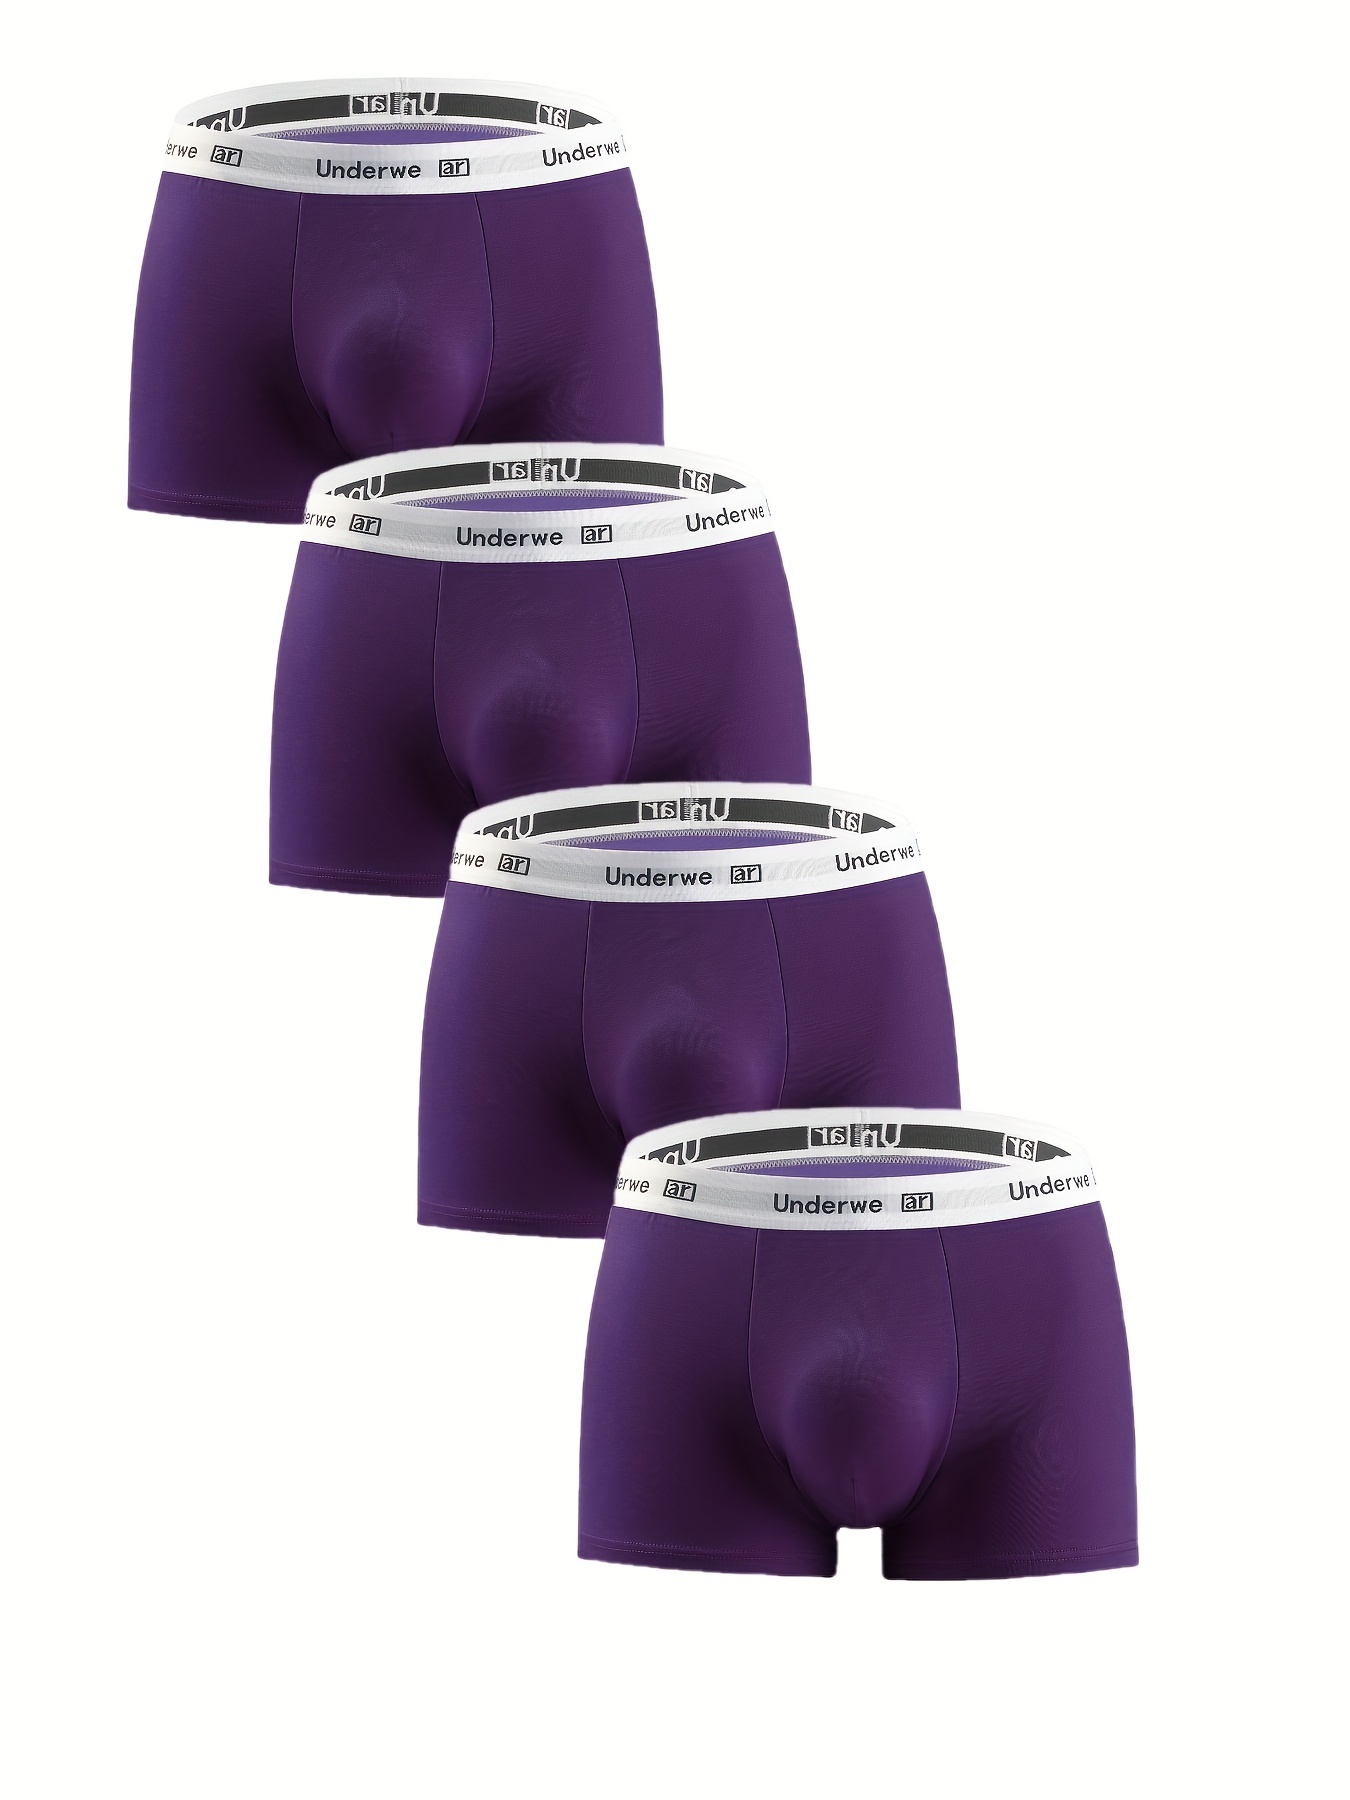 Underwear Expert Well Hung Meundies Boxer Brief Men's Best ENDOWED Underwear  Cushion Comfort Purple Padded removable Sport Indigo Lavender -  Norway